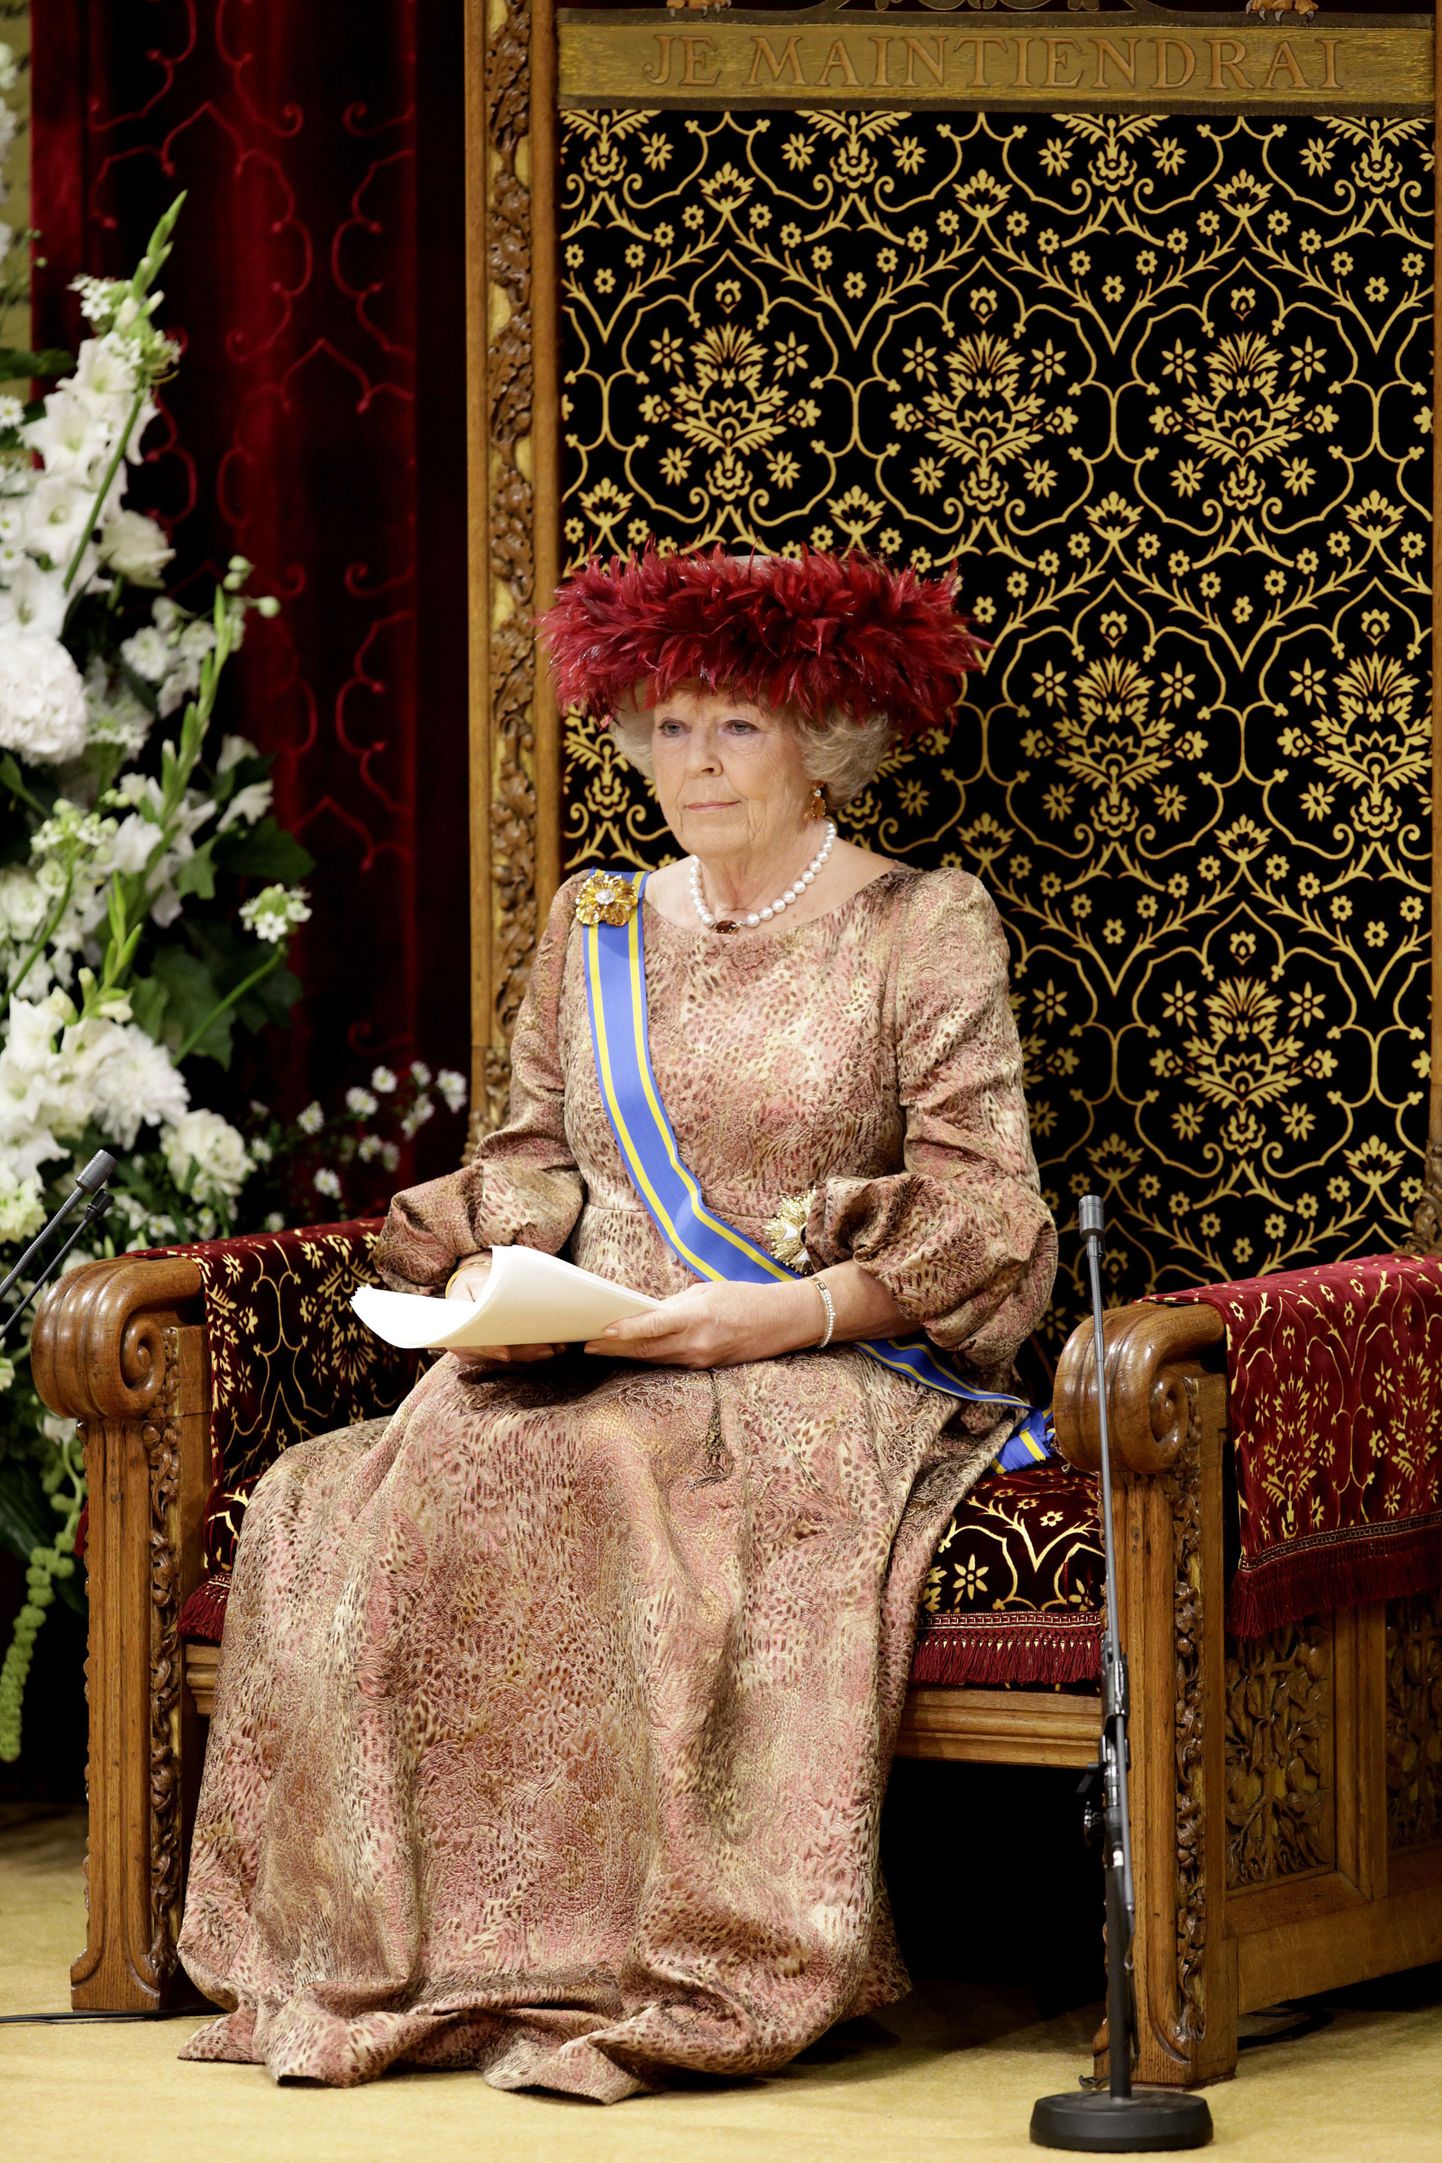 Hollandi kuninganna Beatrix